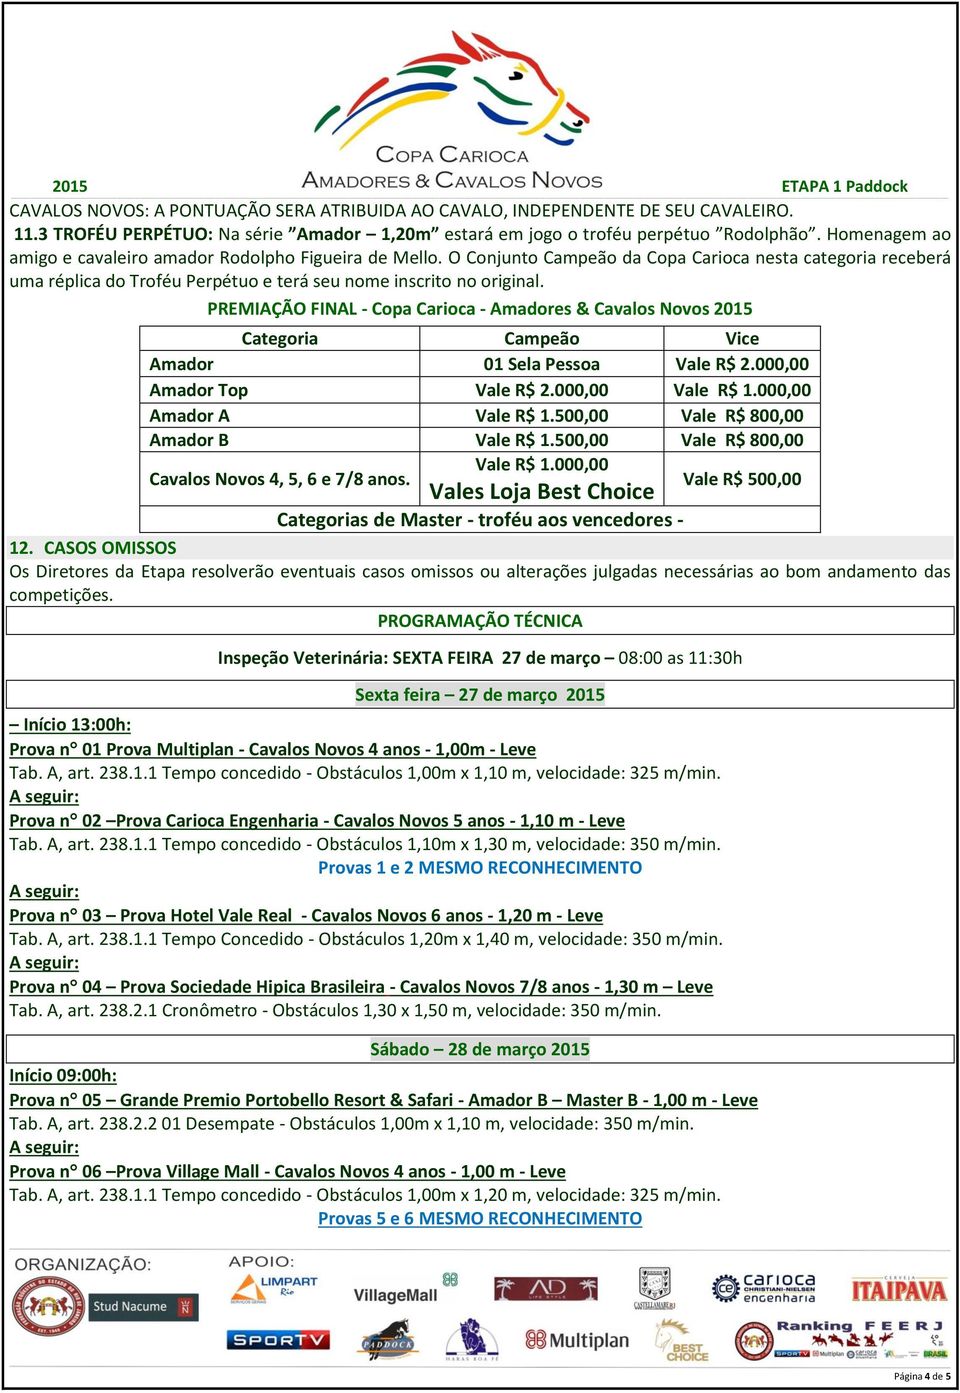 PREMIAÇÃO FINAL - Copa Carioca - Amadores & Cavalos Novos 2015 Categoria Campeão Vice Amador 01 Sela Pessoa Vale R$ 2.000,00 Amador Top Vale R$ 2.000,00 Vale R$ 1.000,00 Amador A Vale R$ 1.